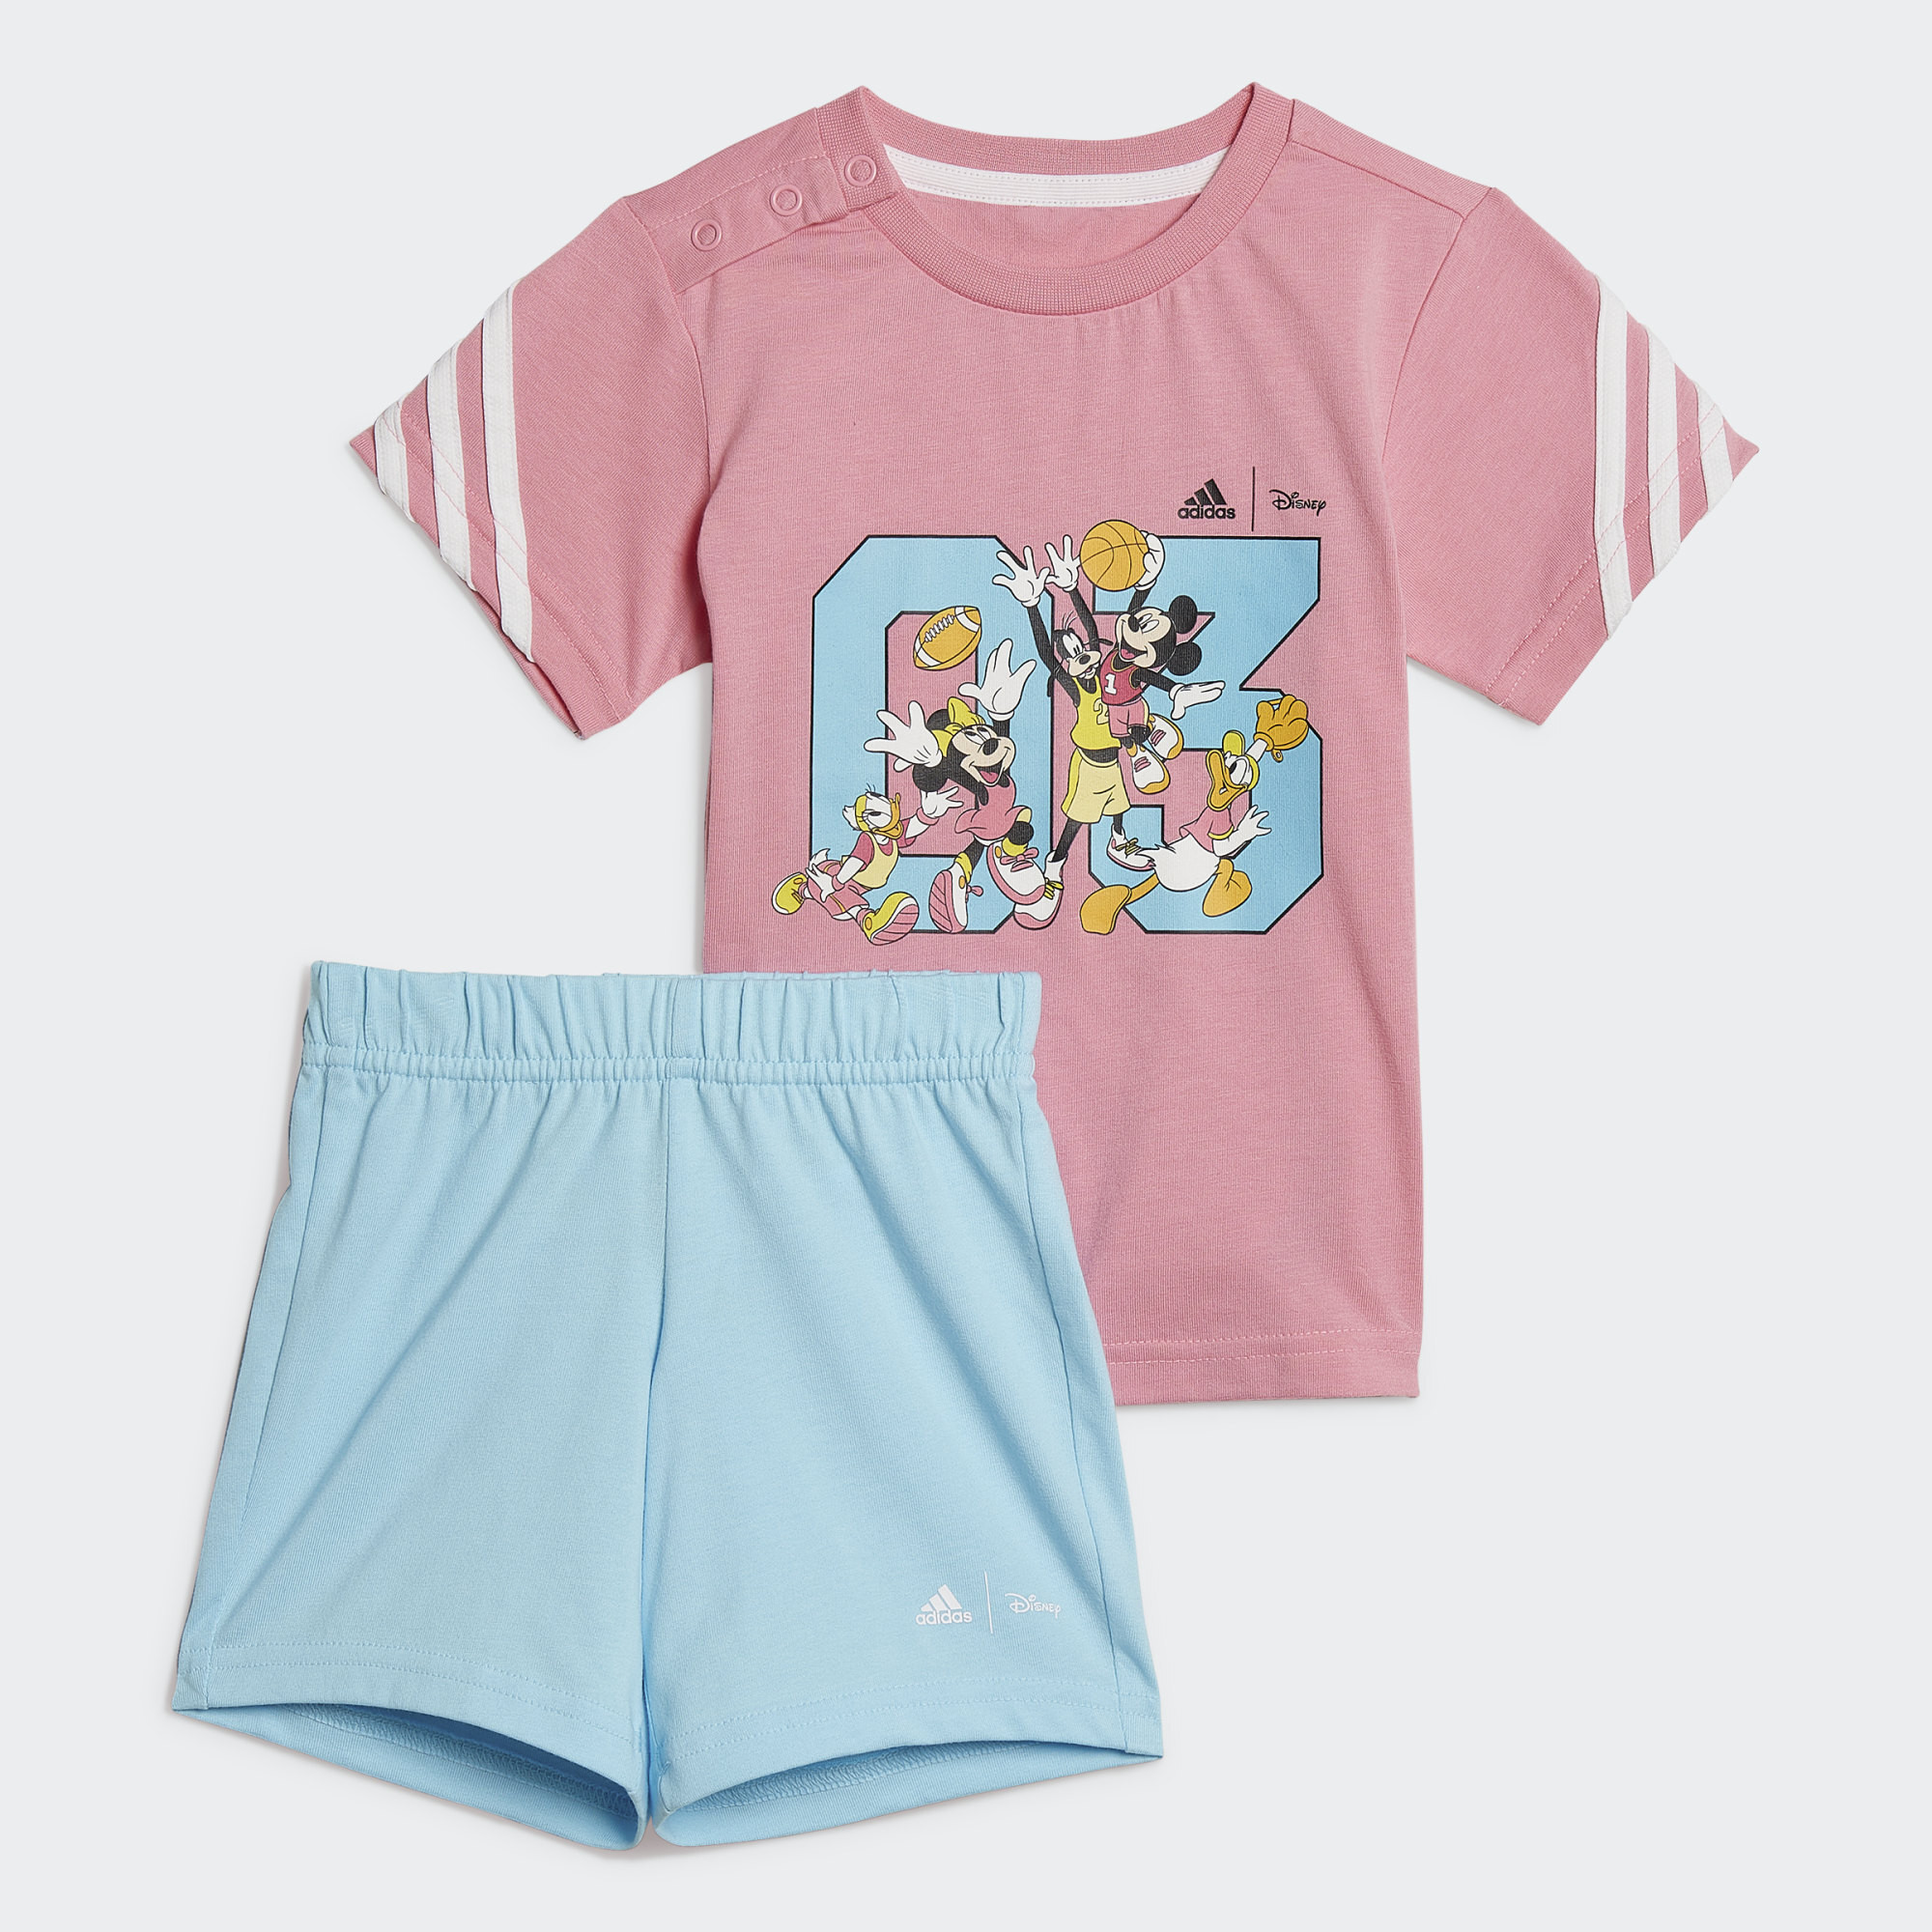 adidas x Disney Mickey Mouse Summer Î Î±Î¹Î´Î¹ÎºÏŒ Î£ÎµÏ„ (9000113218_44355)